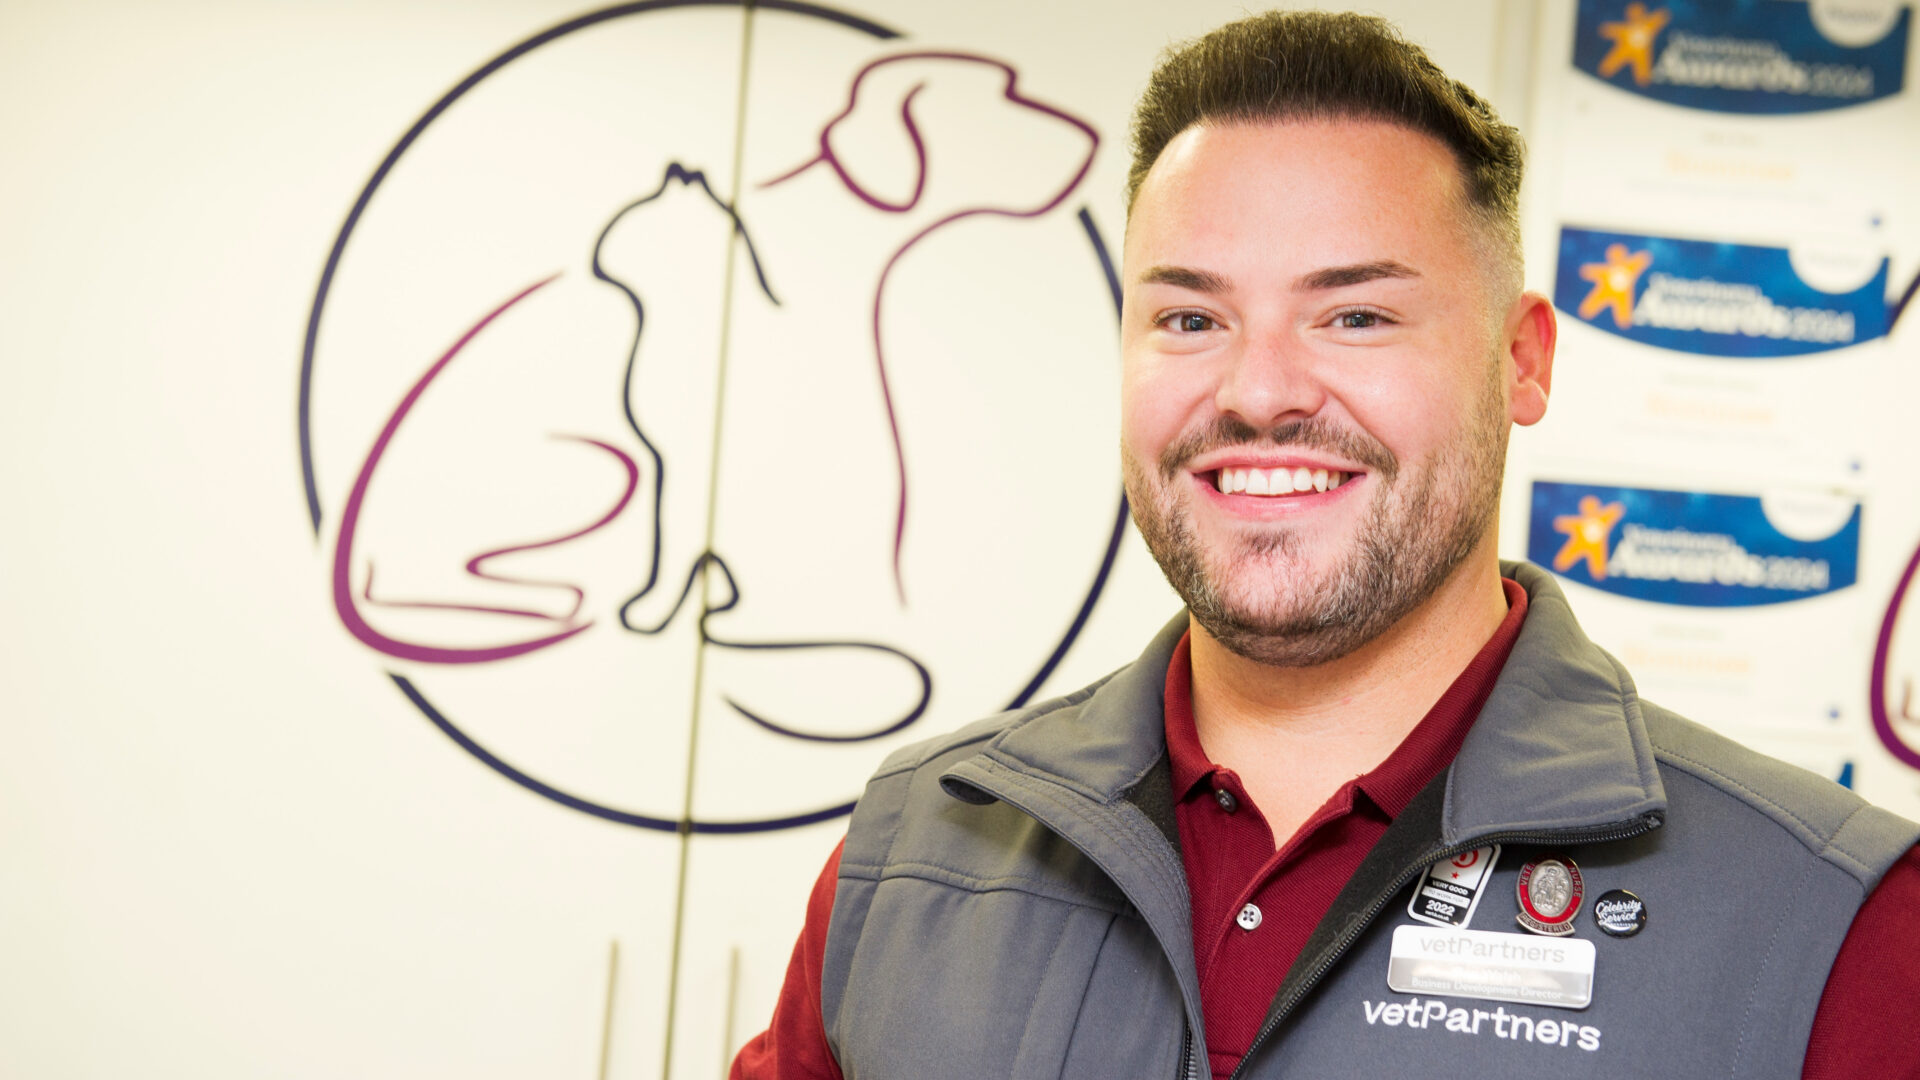 How a veterinary nursing career opened doors for Ben